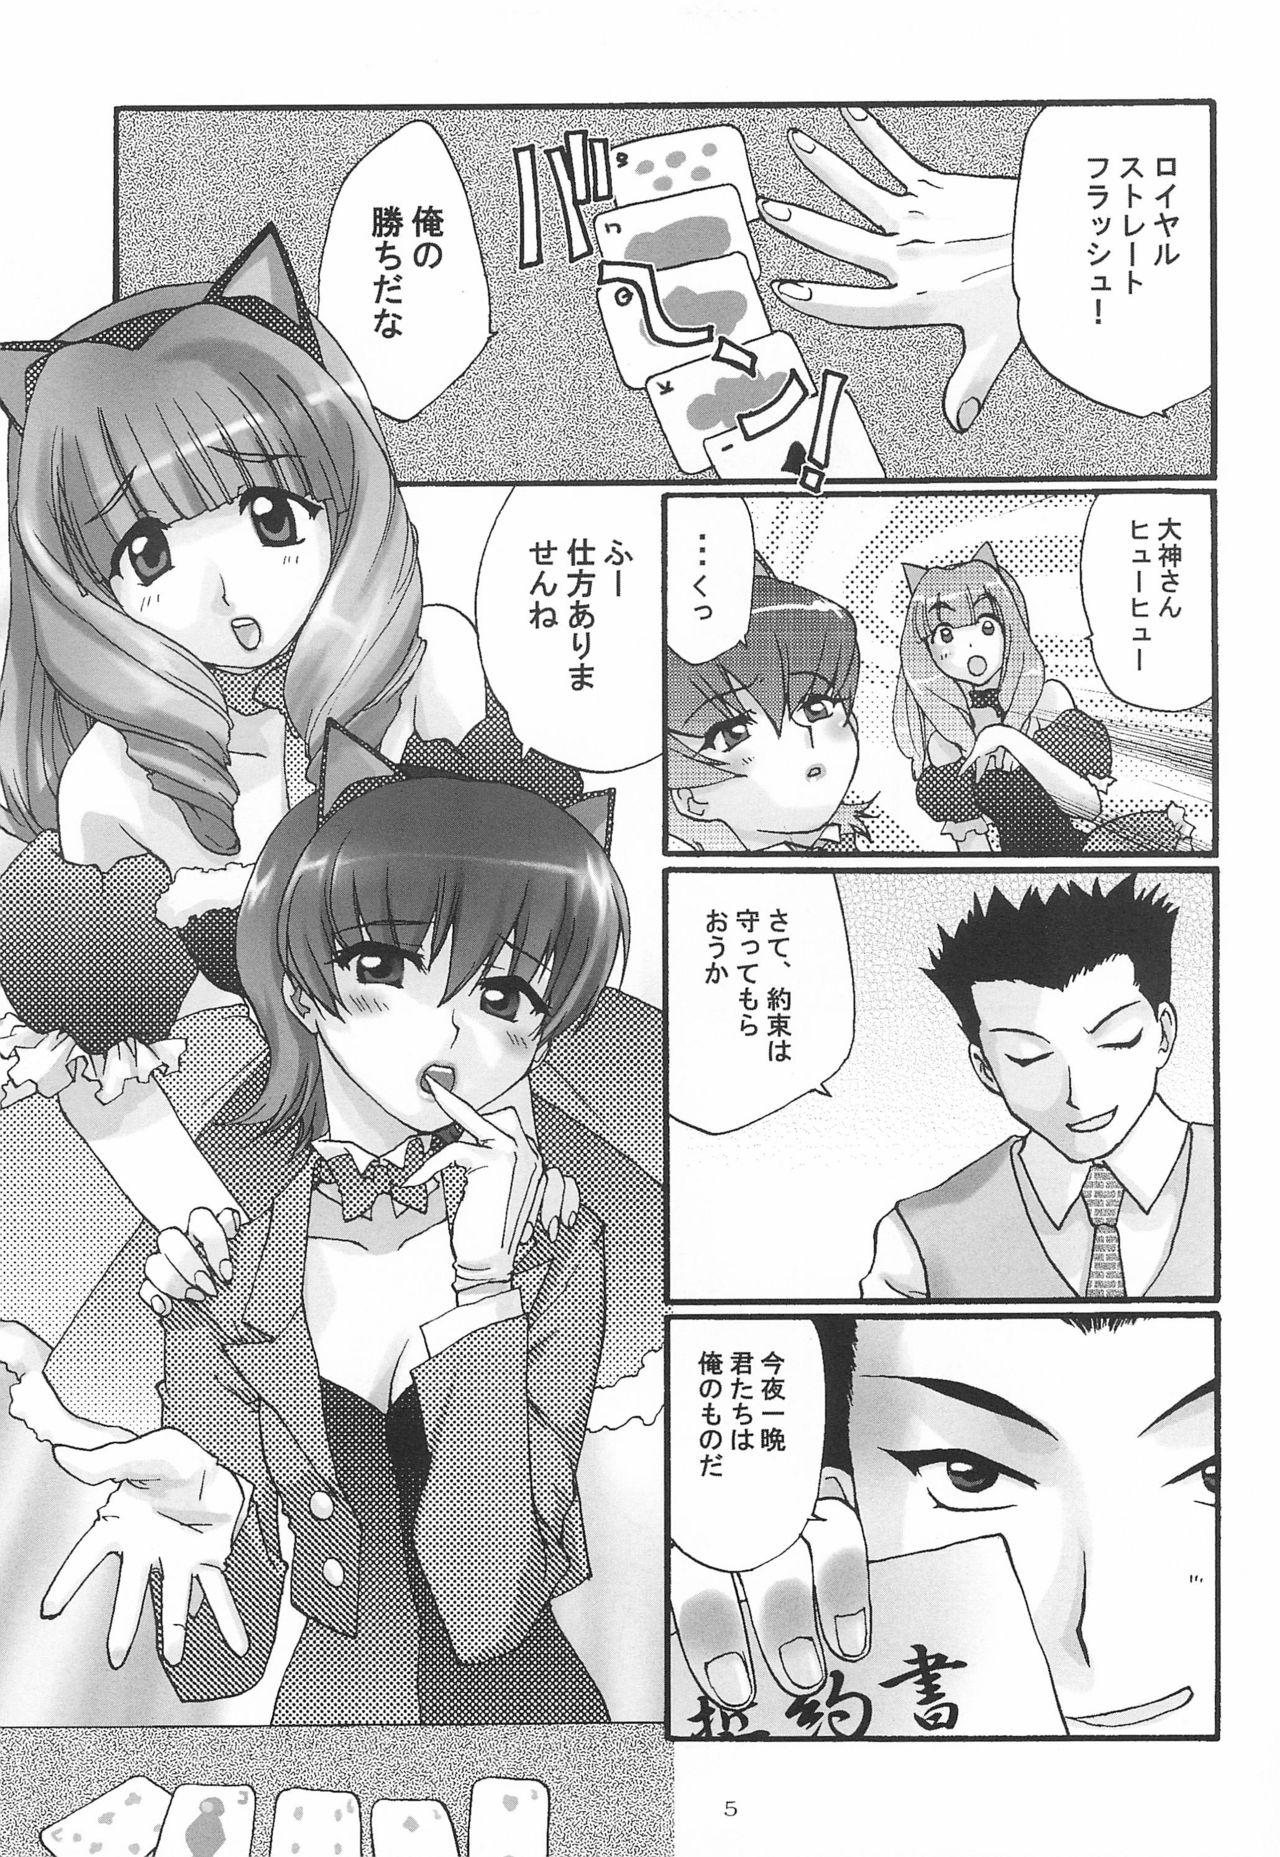 Gaydudes Alleluia - Sakura taisen | sakura wars Mallu - Page 7